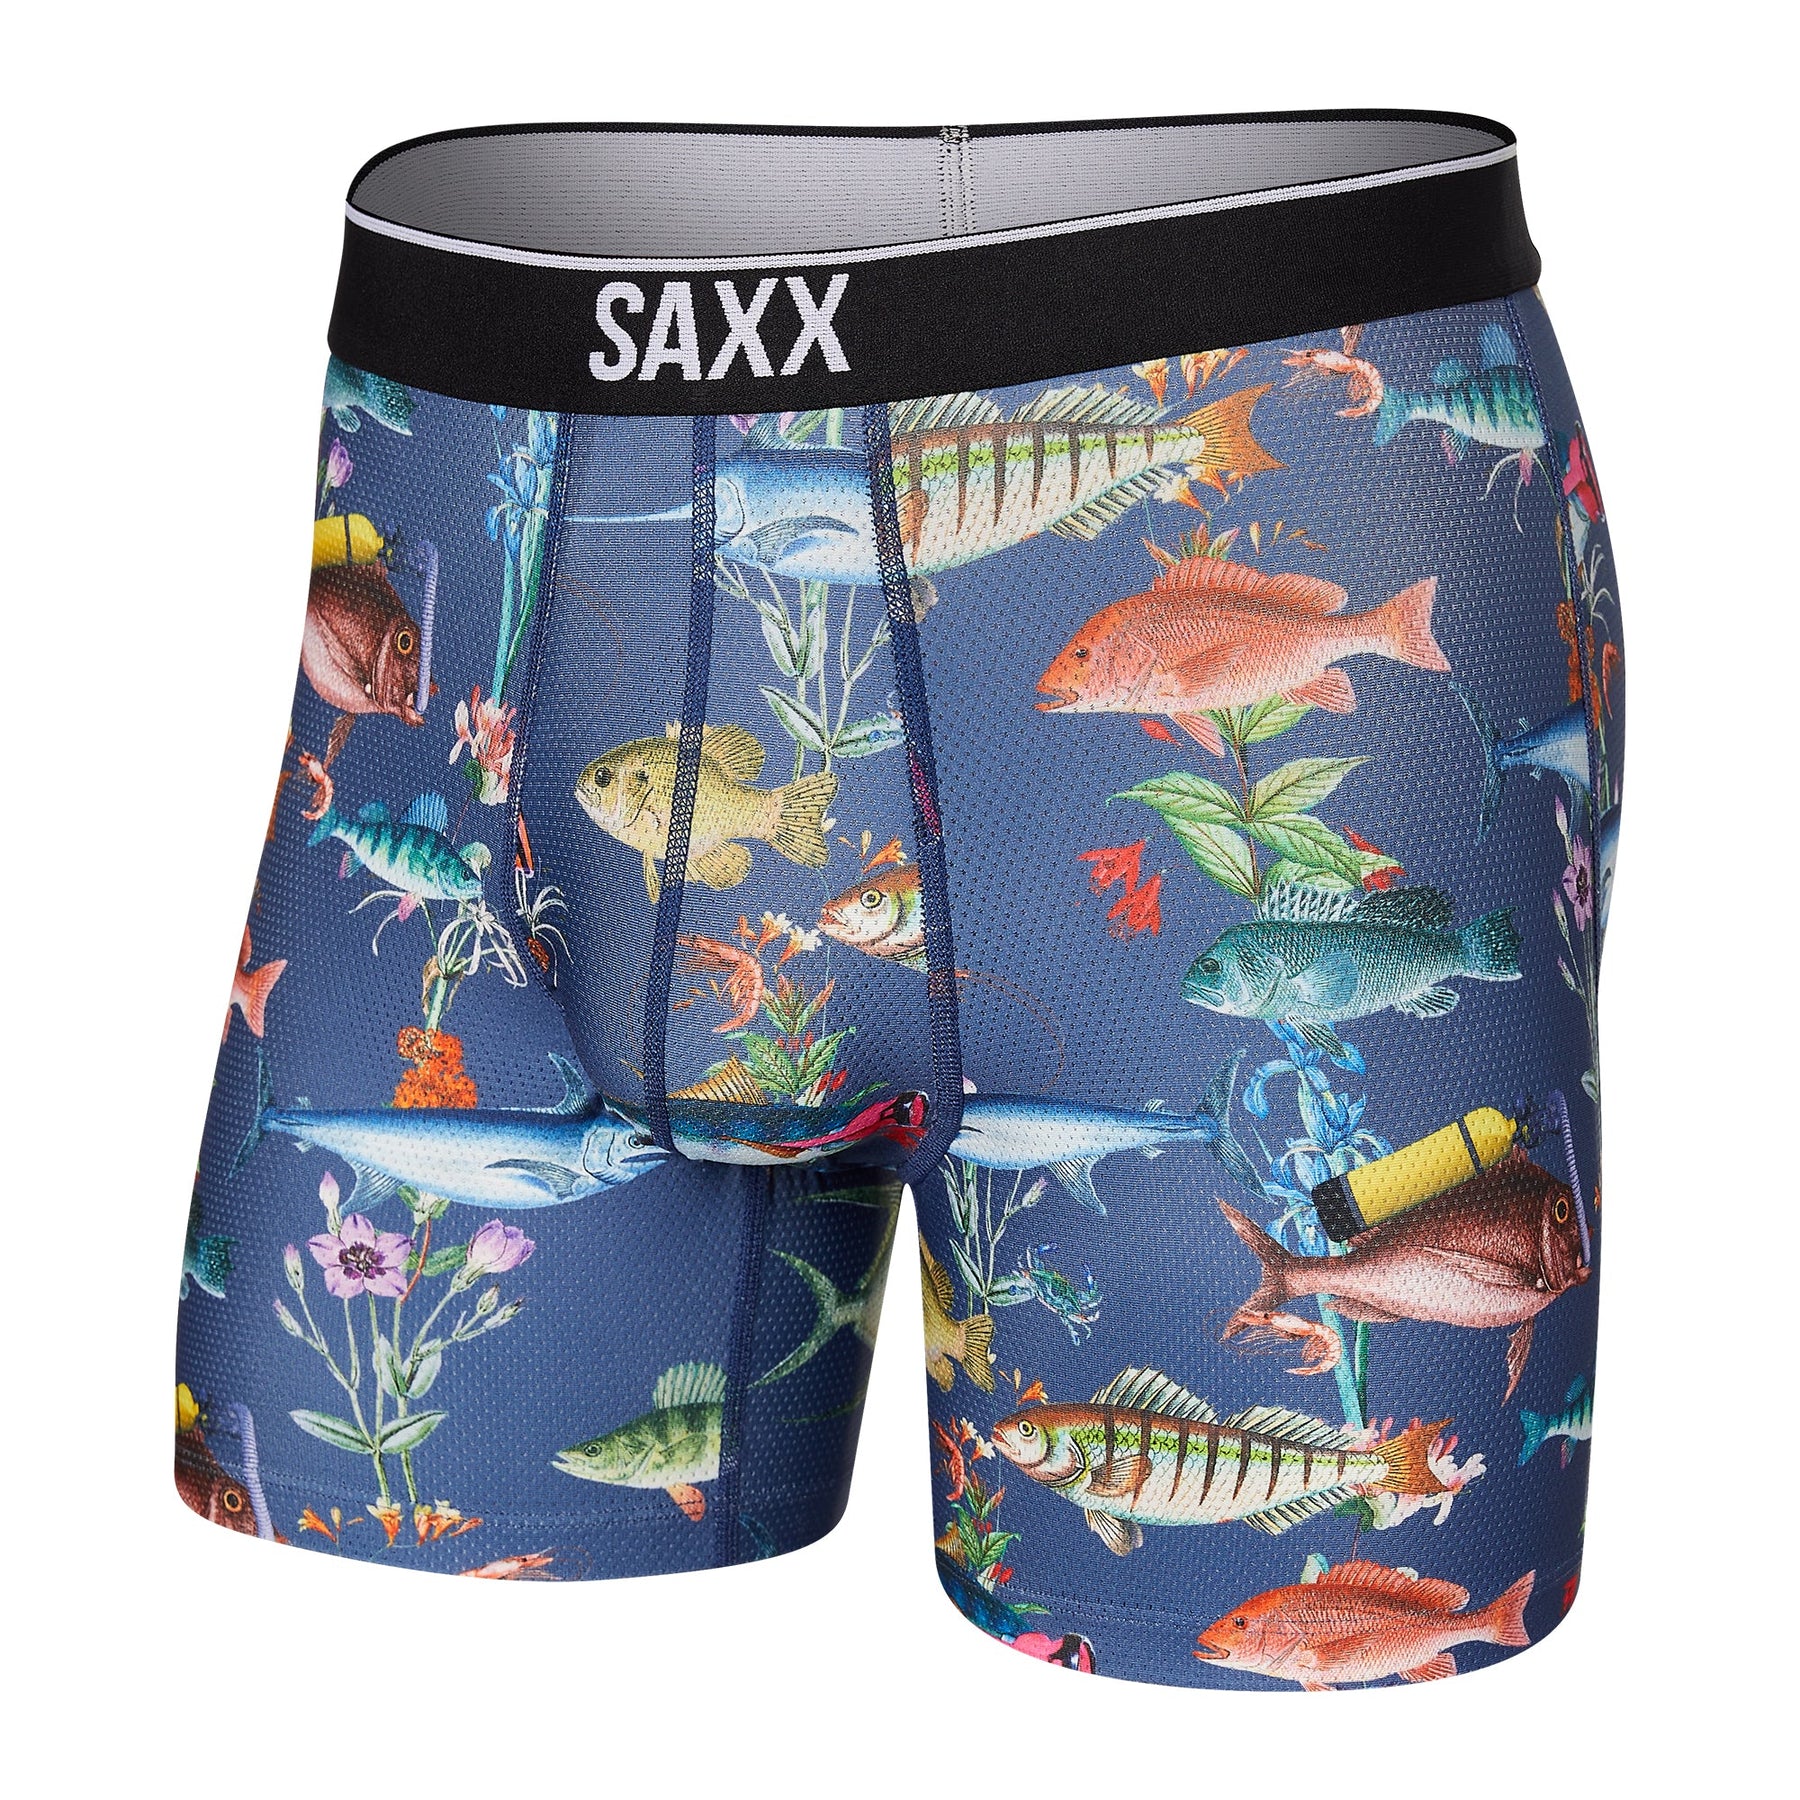 Sous-vêtement pour homme par Saxx | SXBB29 DVD | Machemise.ca, vêtements mode pour hommes